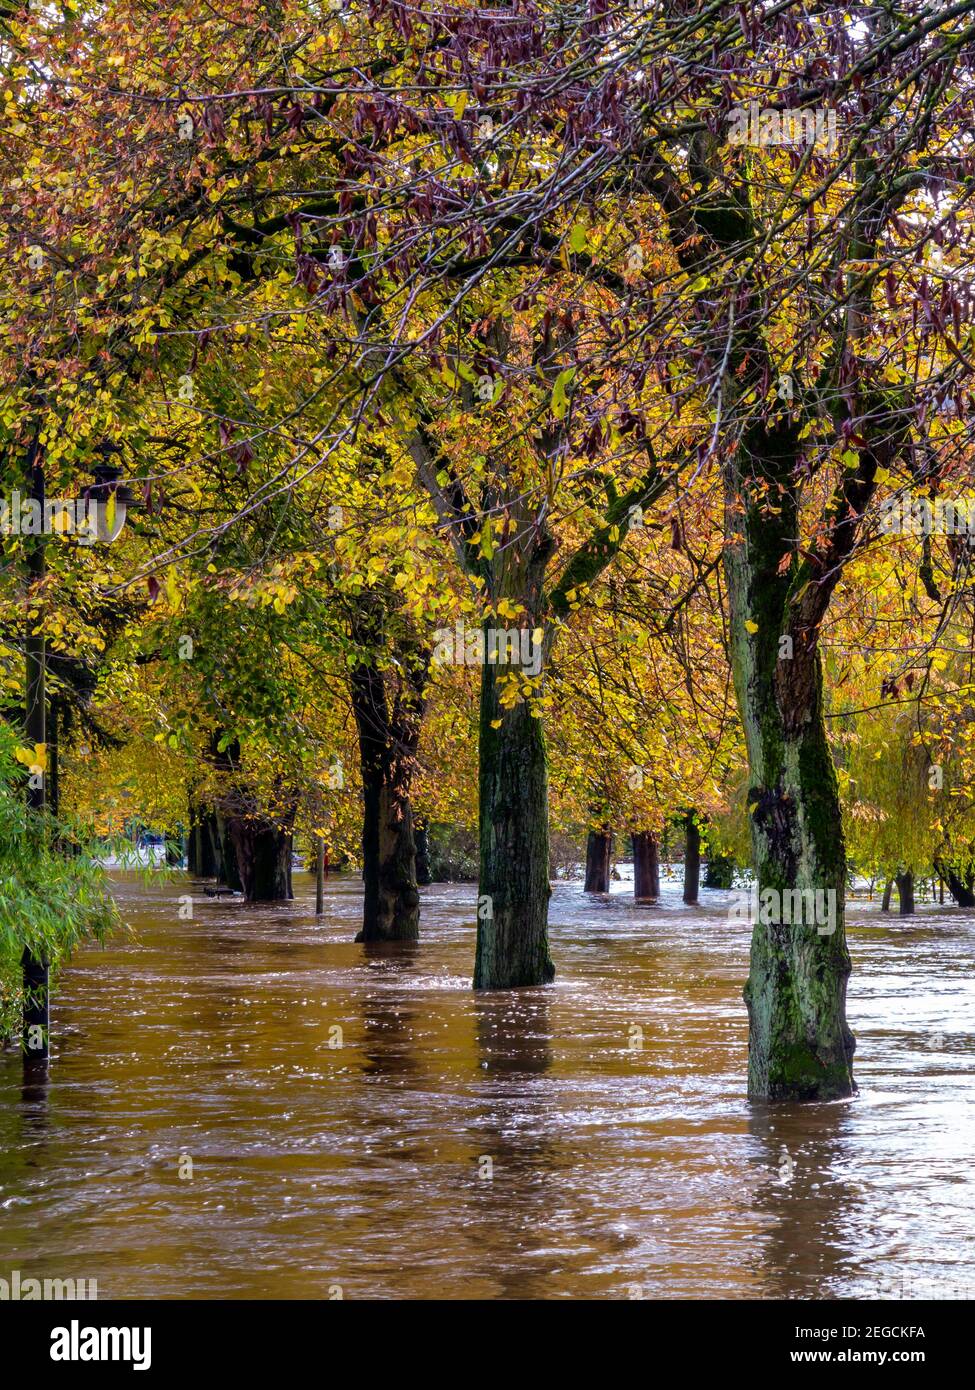 Graves inundaciones causadas por el río Derwent que revienta sus orillas En Hall Leys Park Matlock Derbyshire Peak District Inglaterra Reino Unido En noviembre de 2019 Foto de stock